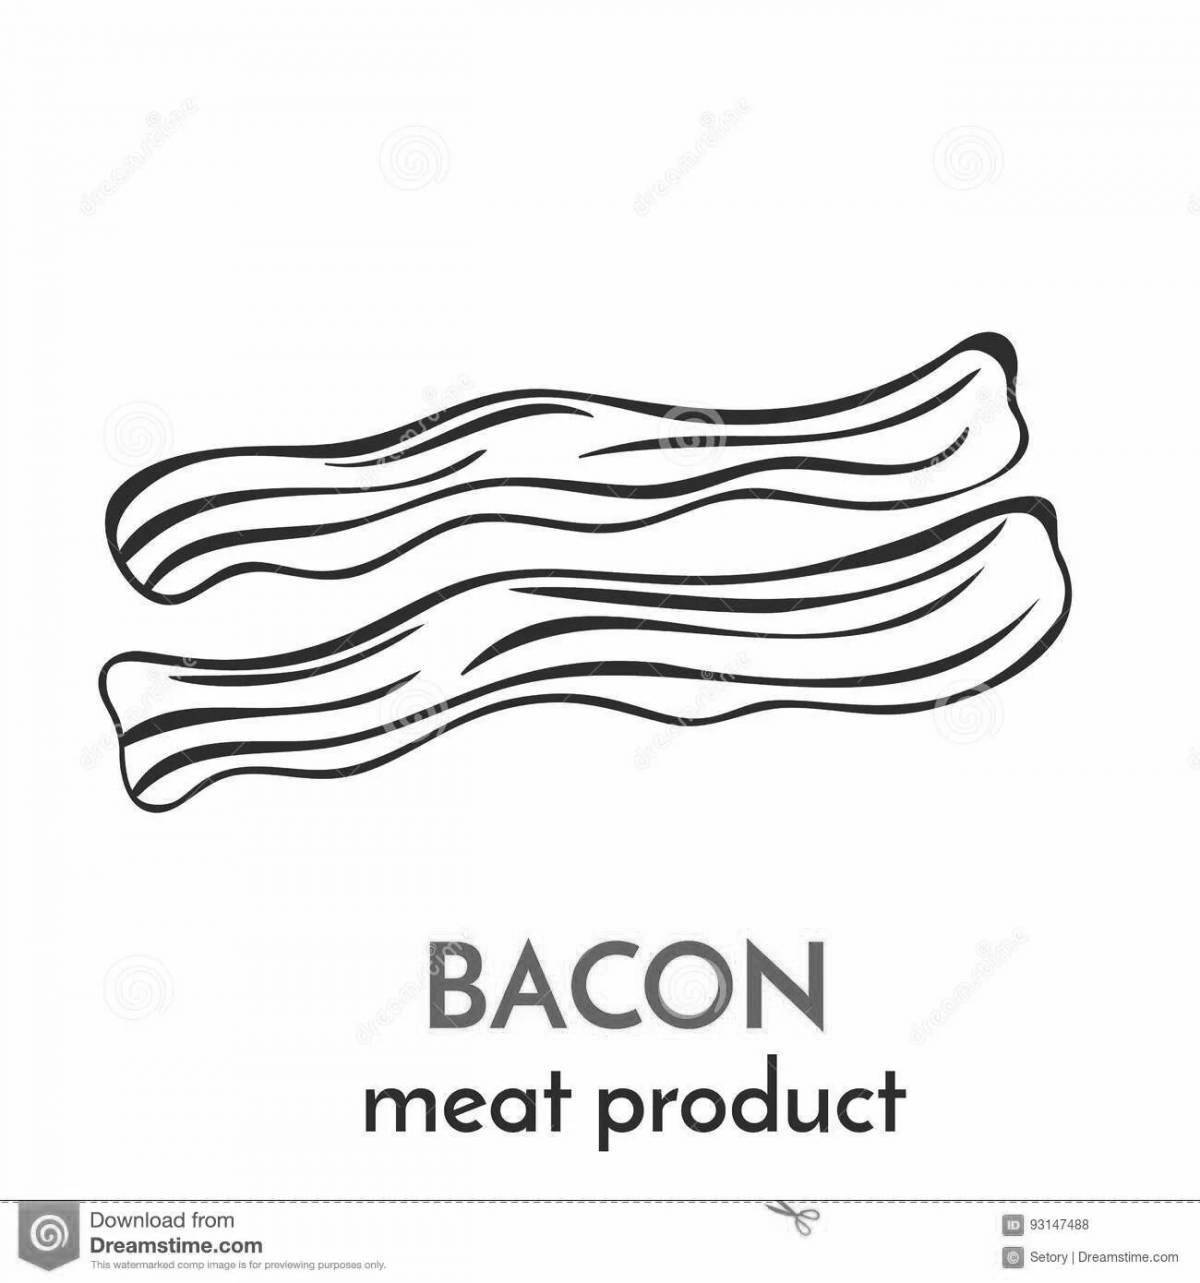 Bacon coloring invitation